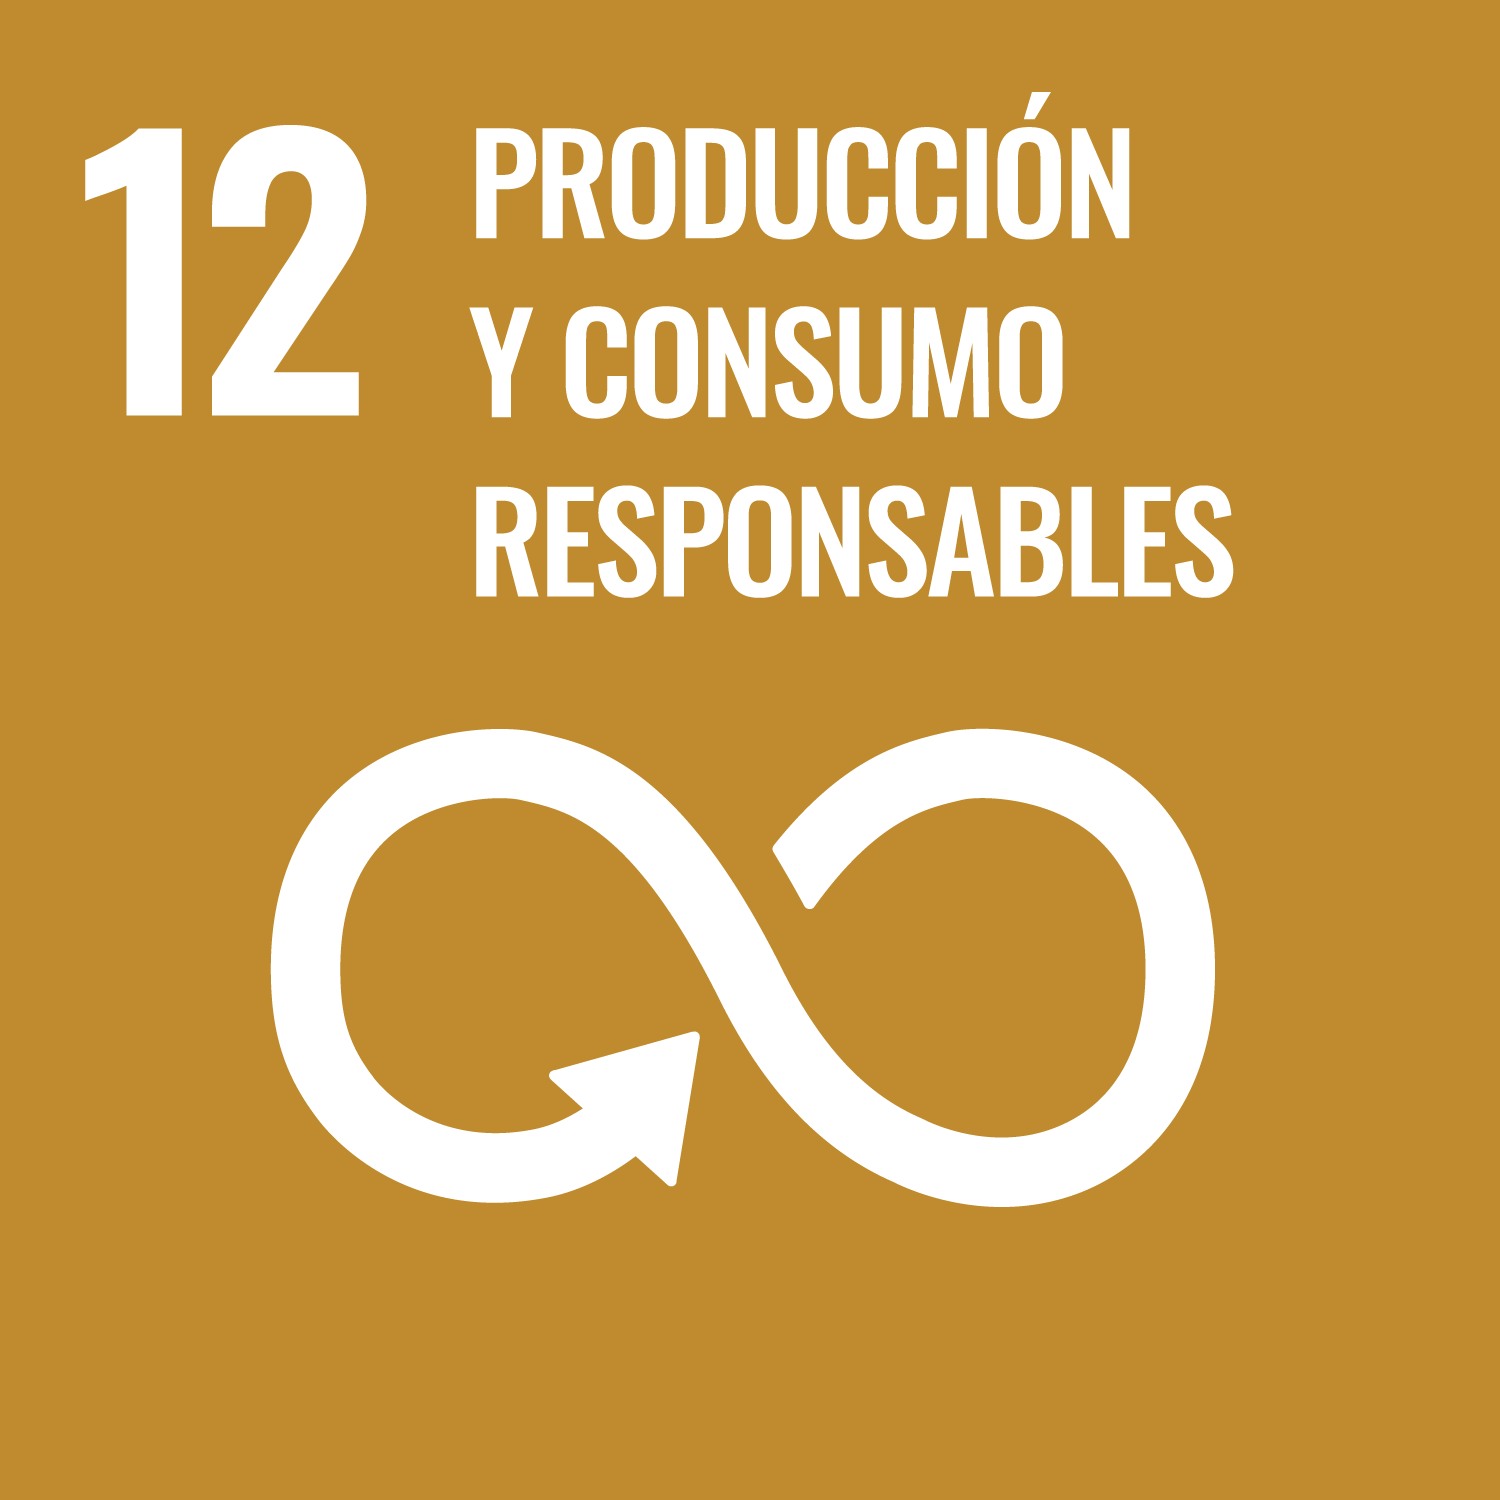 ODS 12 - Producción y consumo responsable